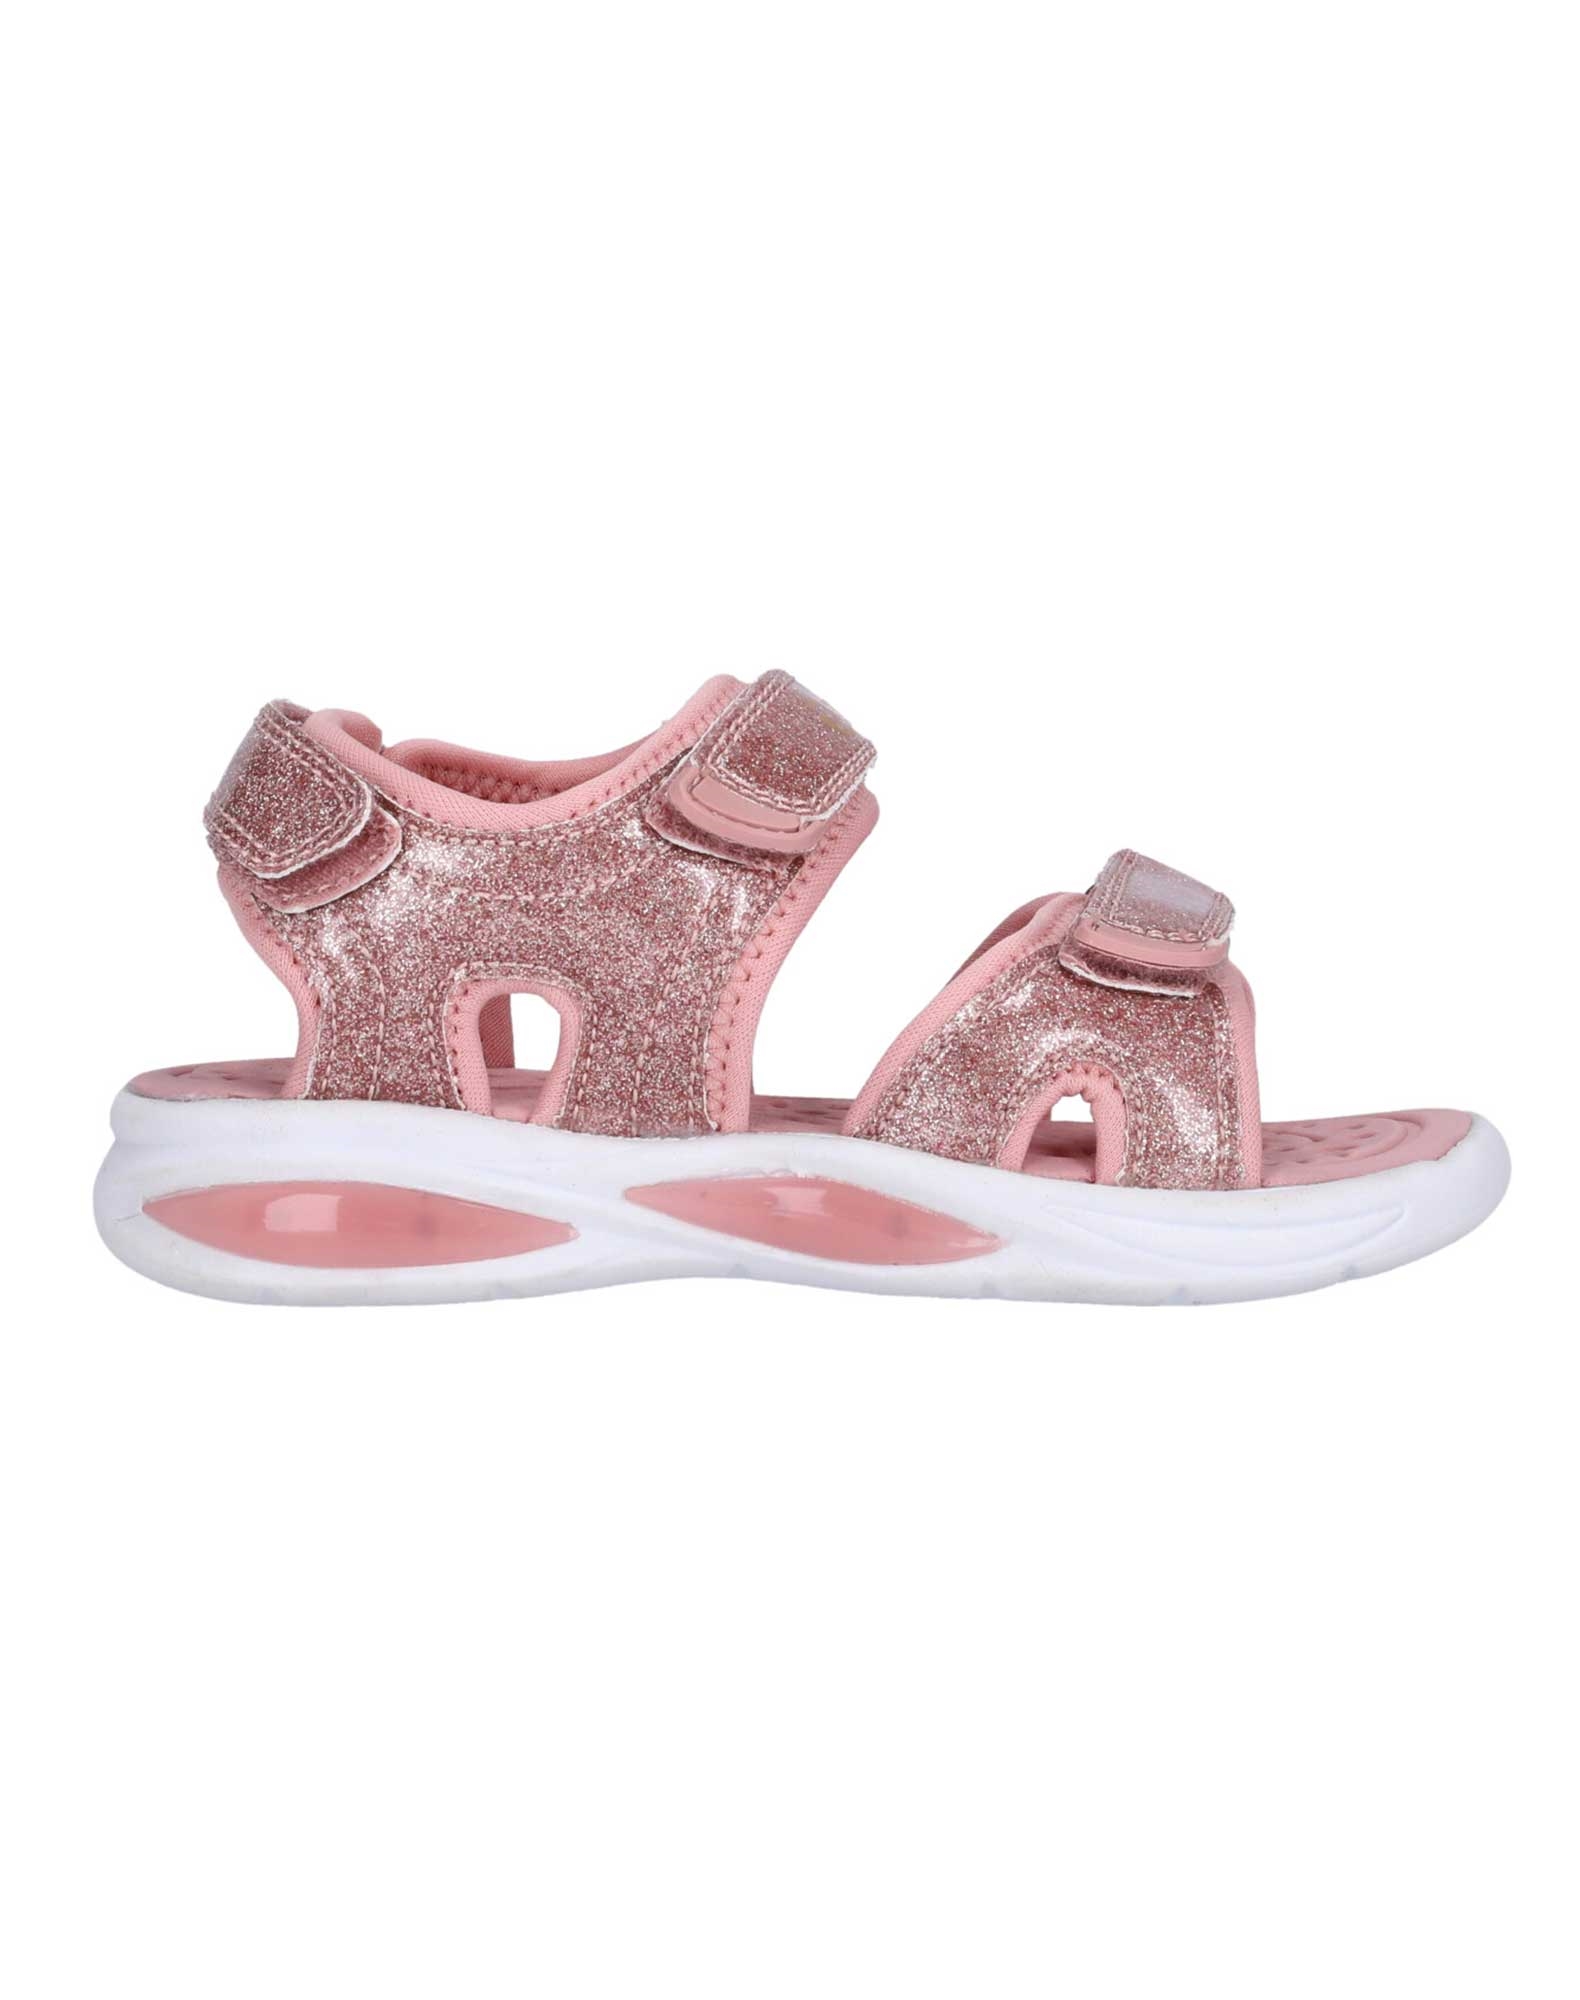 Køb Zag Flouer sandaler til pige i pink